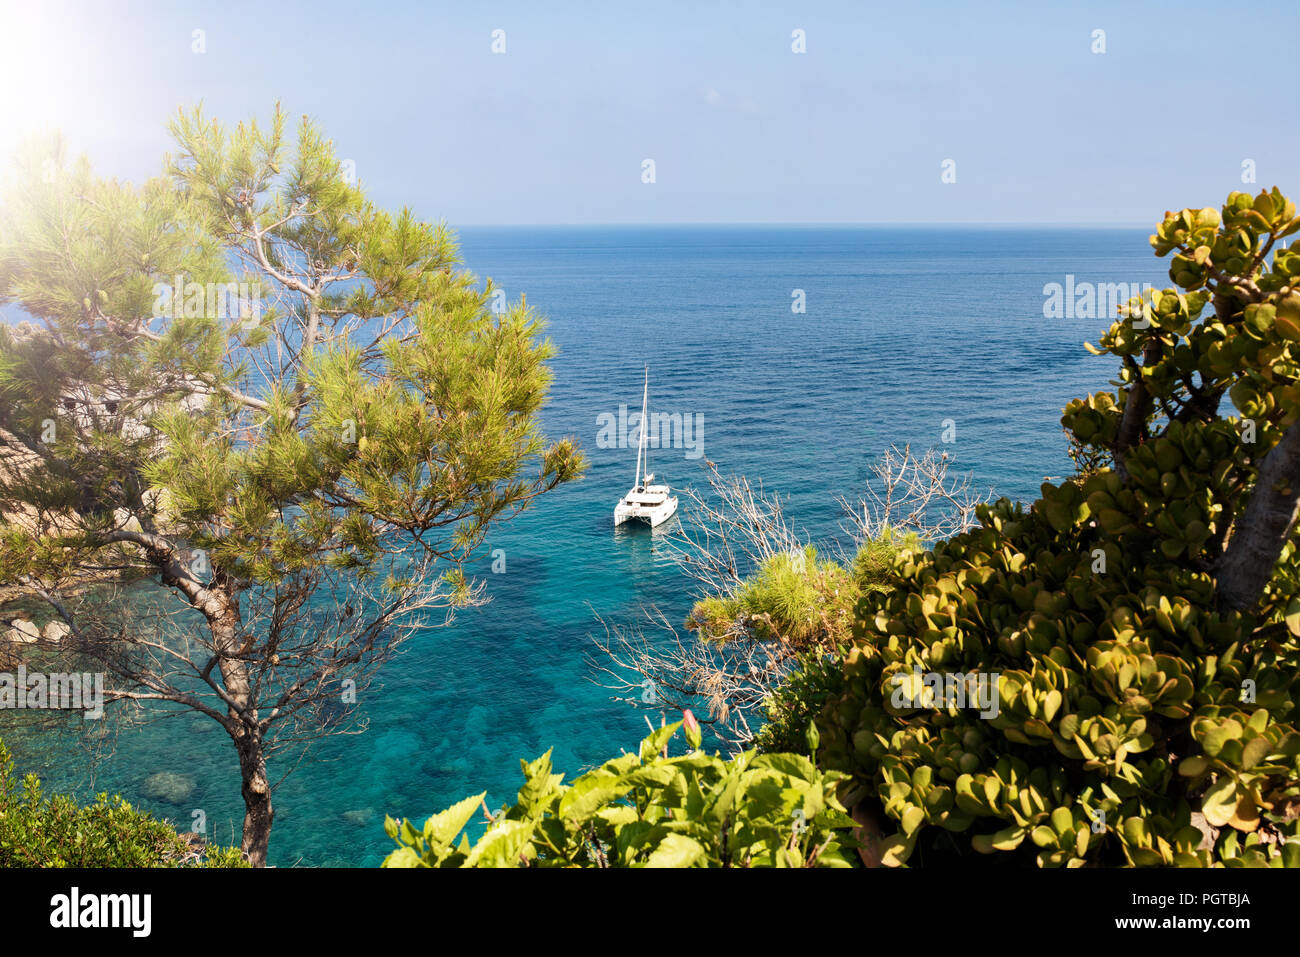 sailboat on turquoise mediterranean sea  Stock Photo